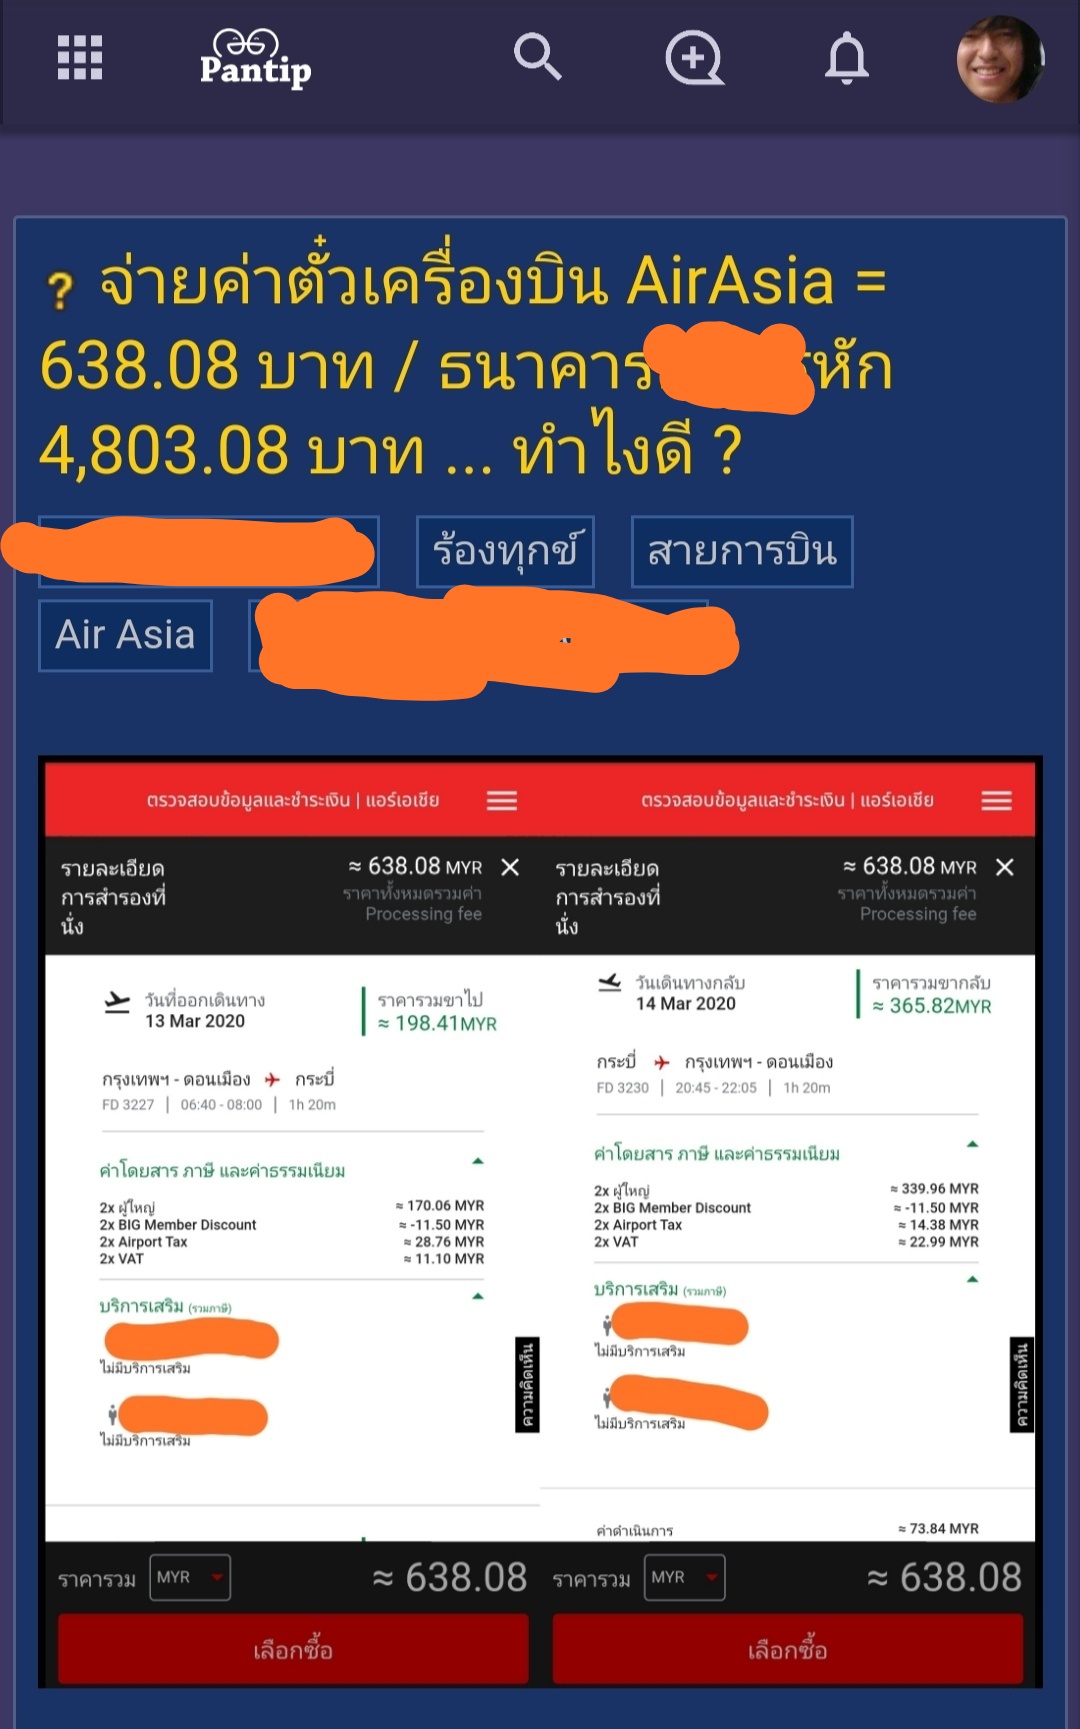 กระทู้ใหม่) จองตั๋วเครื่องบิน Airasia ช่วงโปรลดราคา = 638.08 /  พอสั่งจ่ายเงิน โดนตัดบัตร = 4,803.08 ... ทำยังไง - Pantip